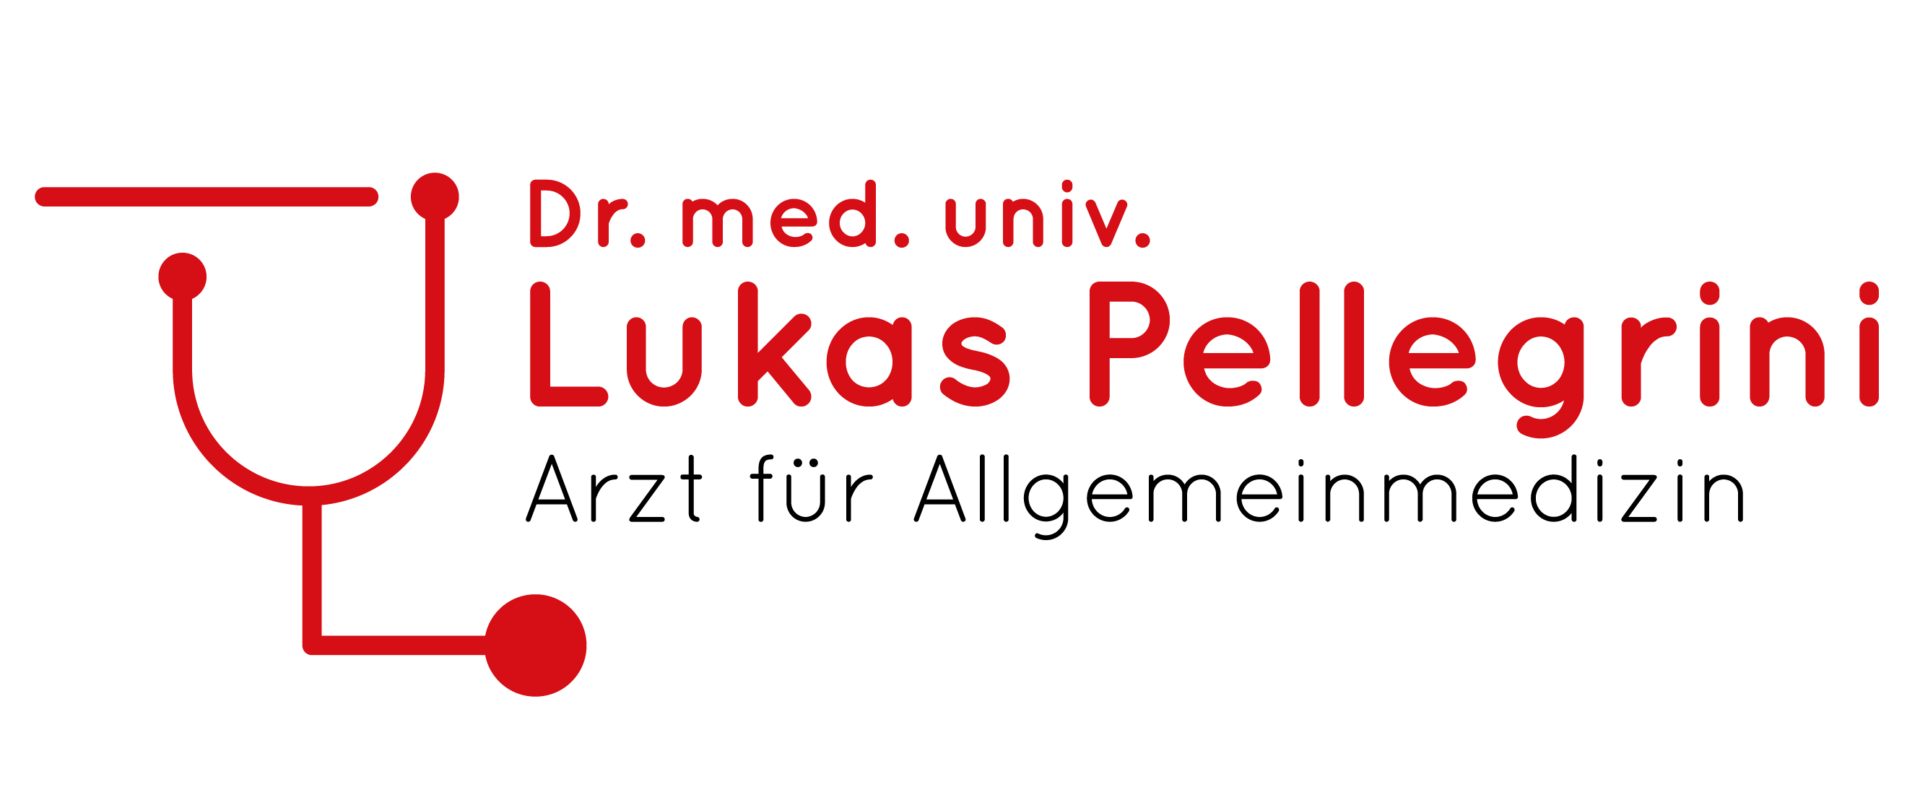 Dr. Lukas Pellegrini